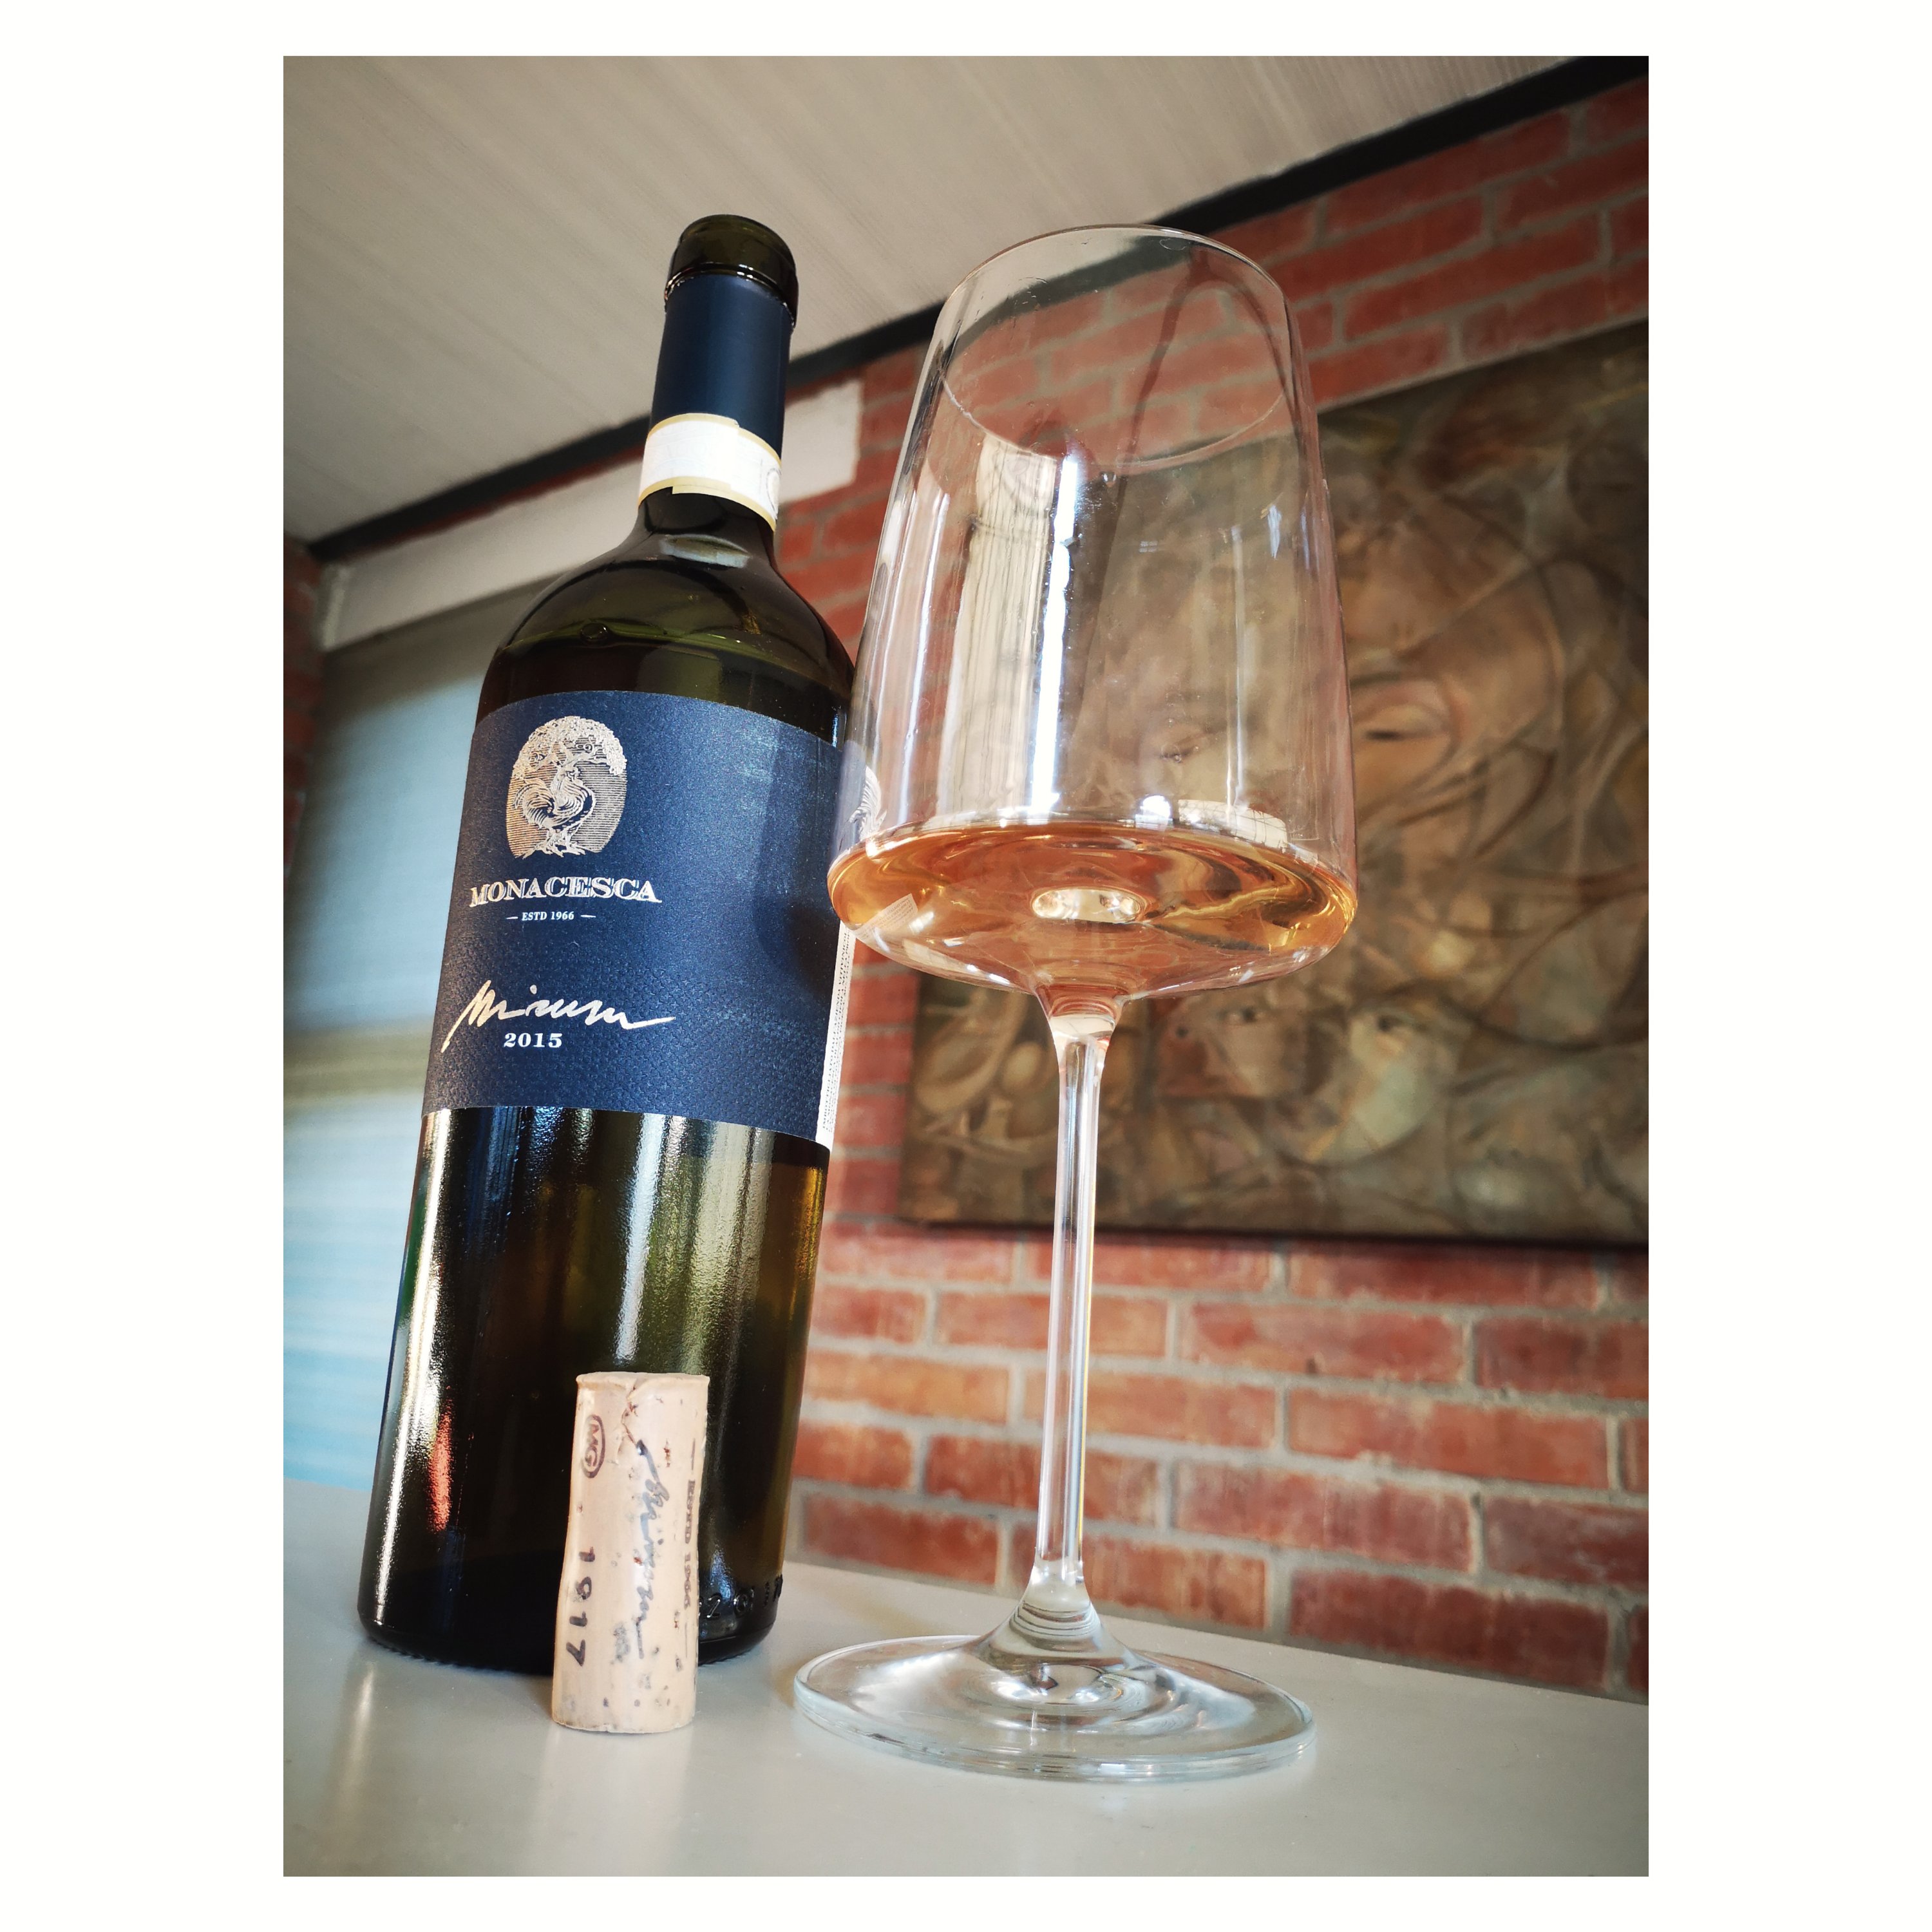 Enonauta/Degustazione di Vino #083 - review - VERDICCHIO DI MATELICA RISERVA DOCG MIRUM 2015 - La Monacesca | un superverdicchio affascinante